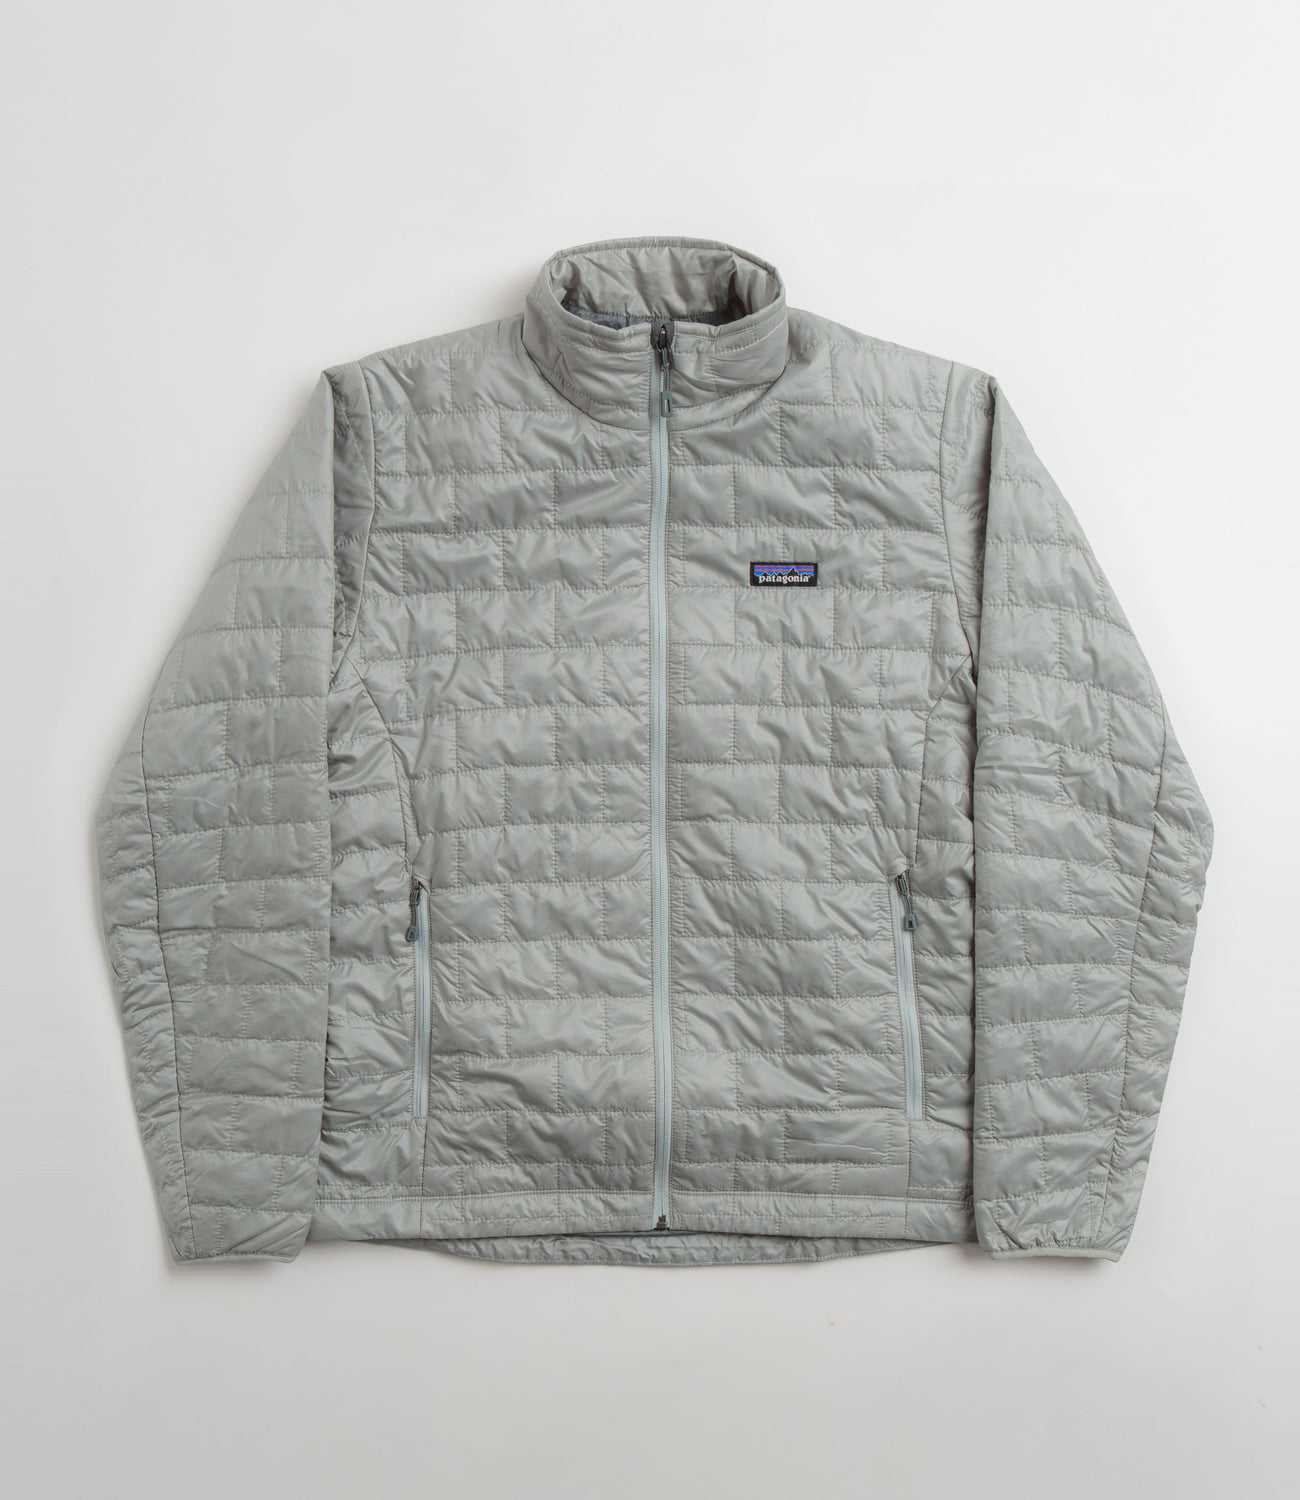 Patagonia Nano Puff Jacket - Coats & jackets